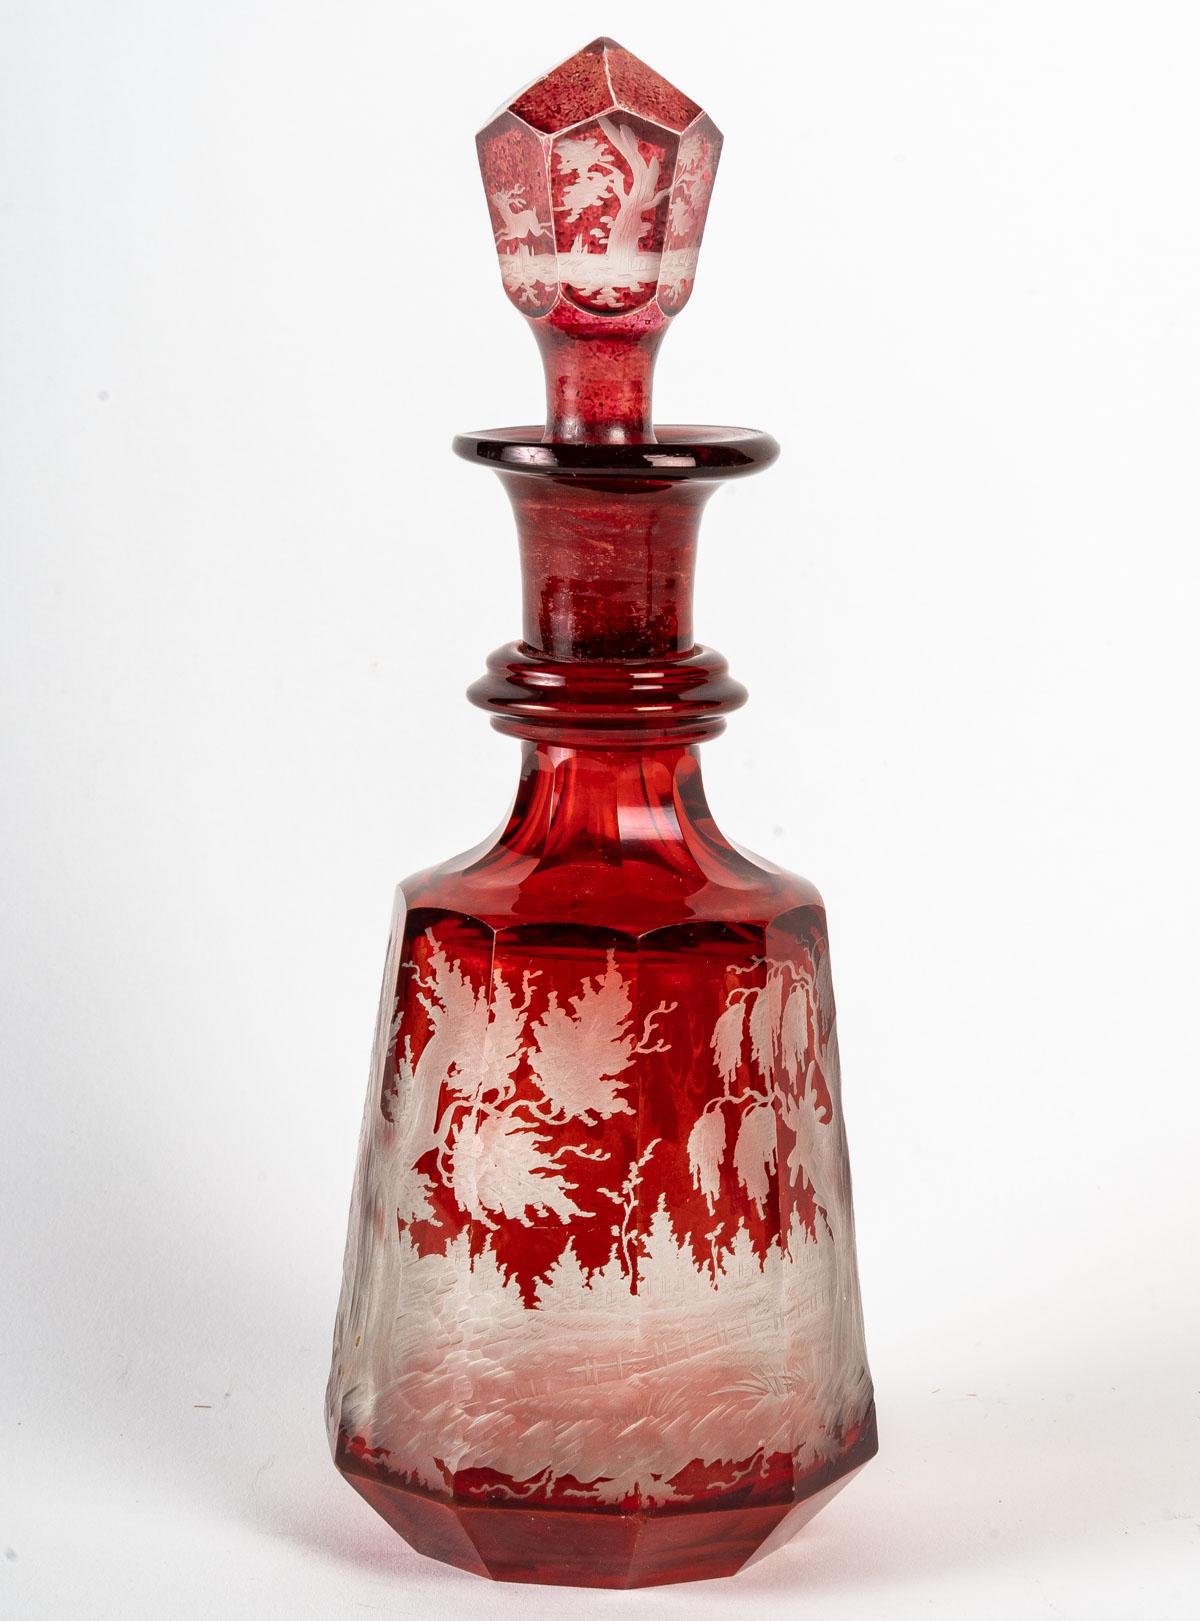 Rotes böhmisches Kristallservice, 19. Jahrhundert
Böhmisches Kristallservice mit einem Tablett, 6 Gläsern und einer Karaffe, graviert mit Jagdszene. 19. Jahrhundert.
H: 21 cm, B: 38 cm, T: 23 cm
3046.